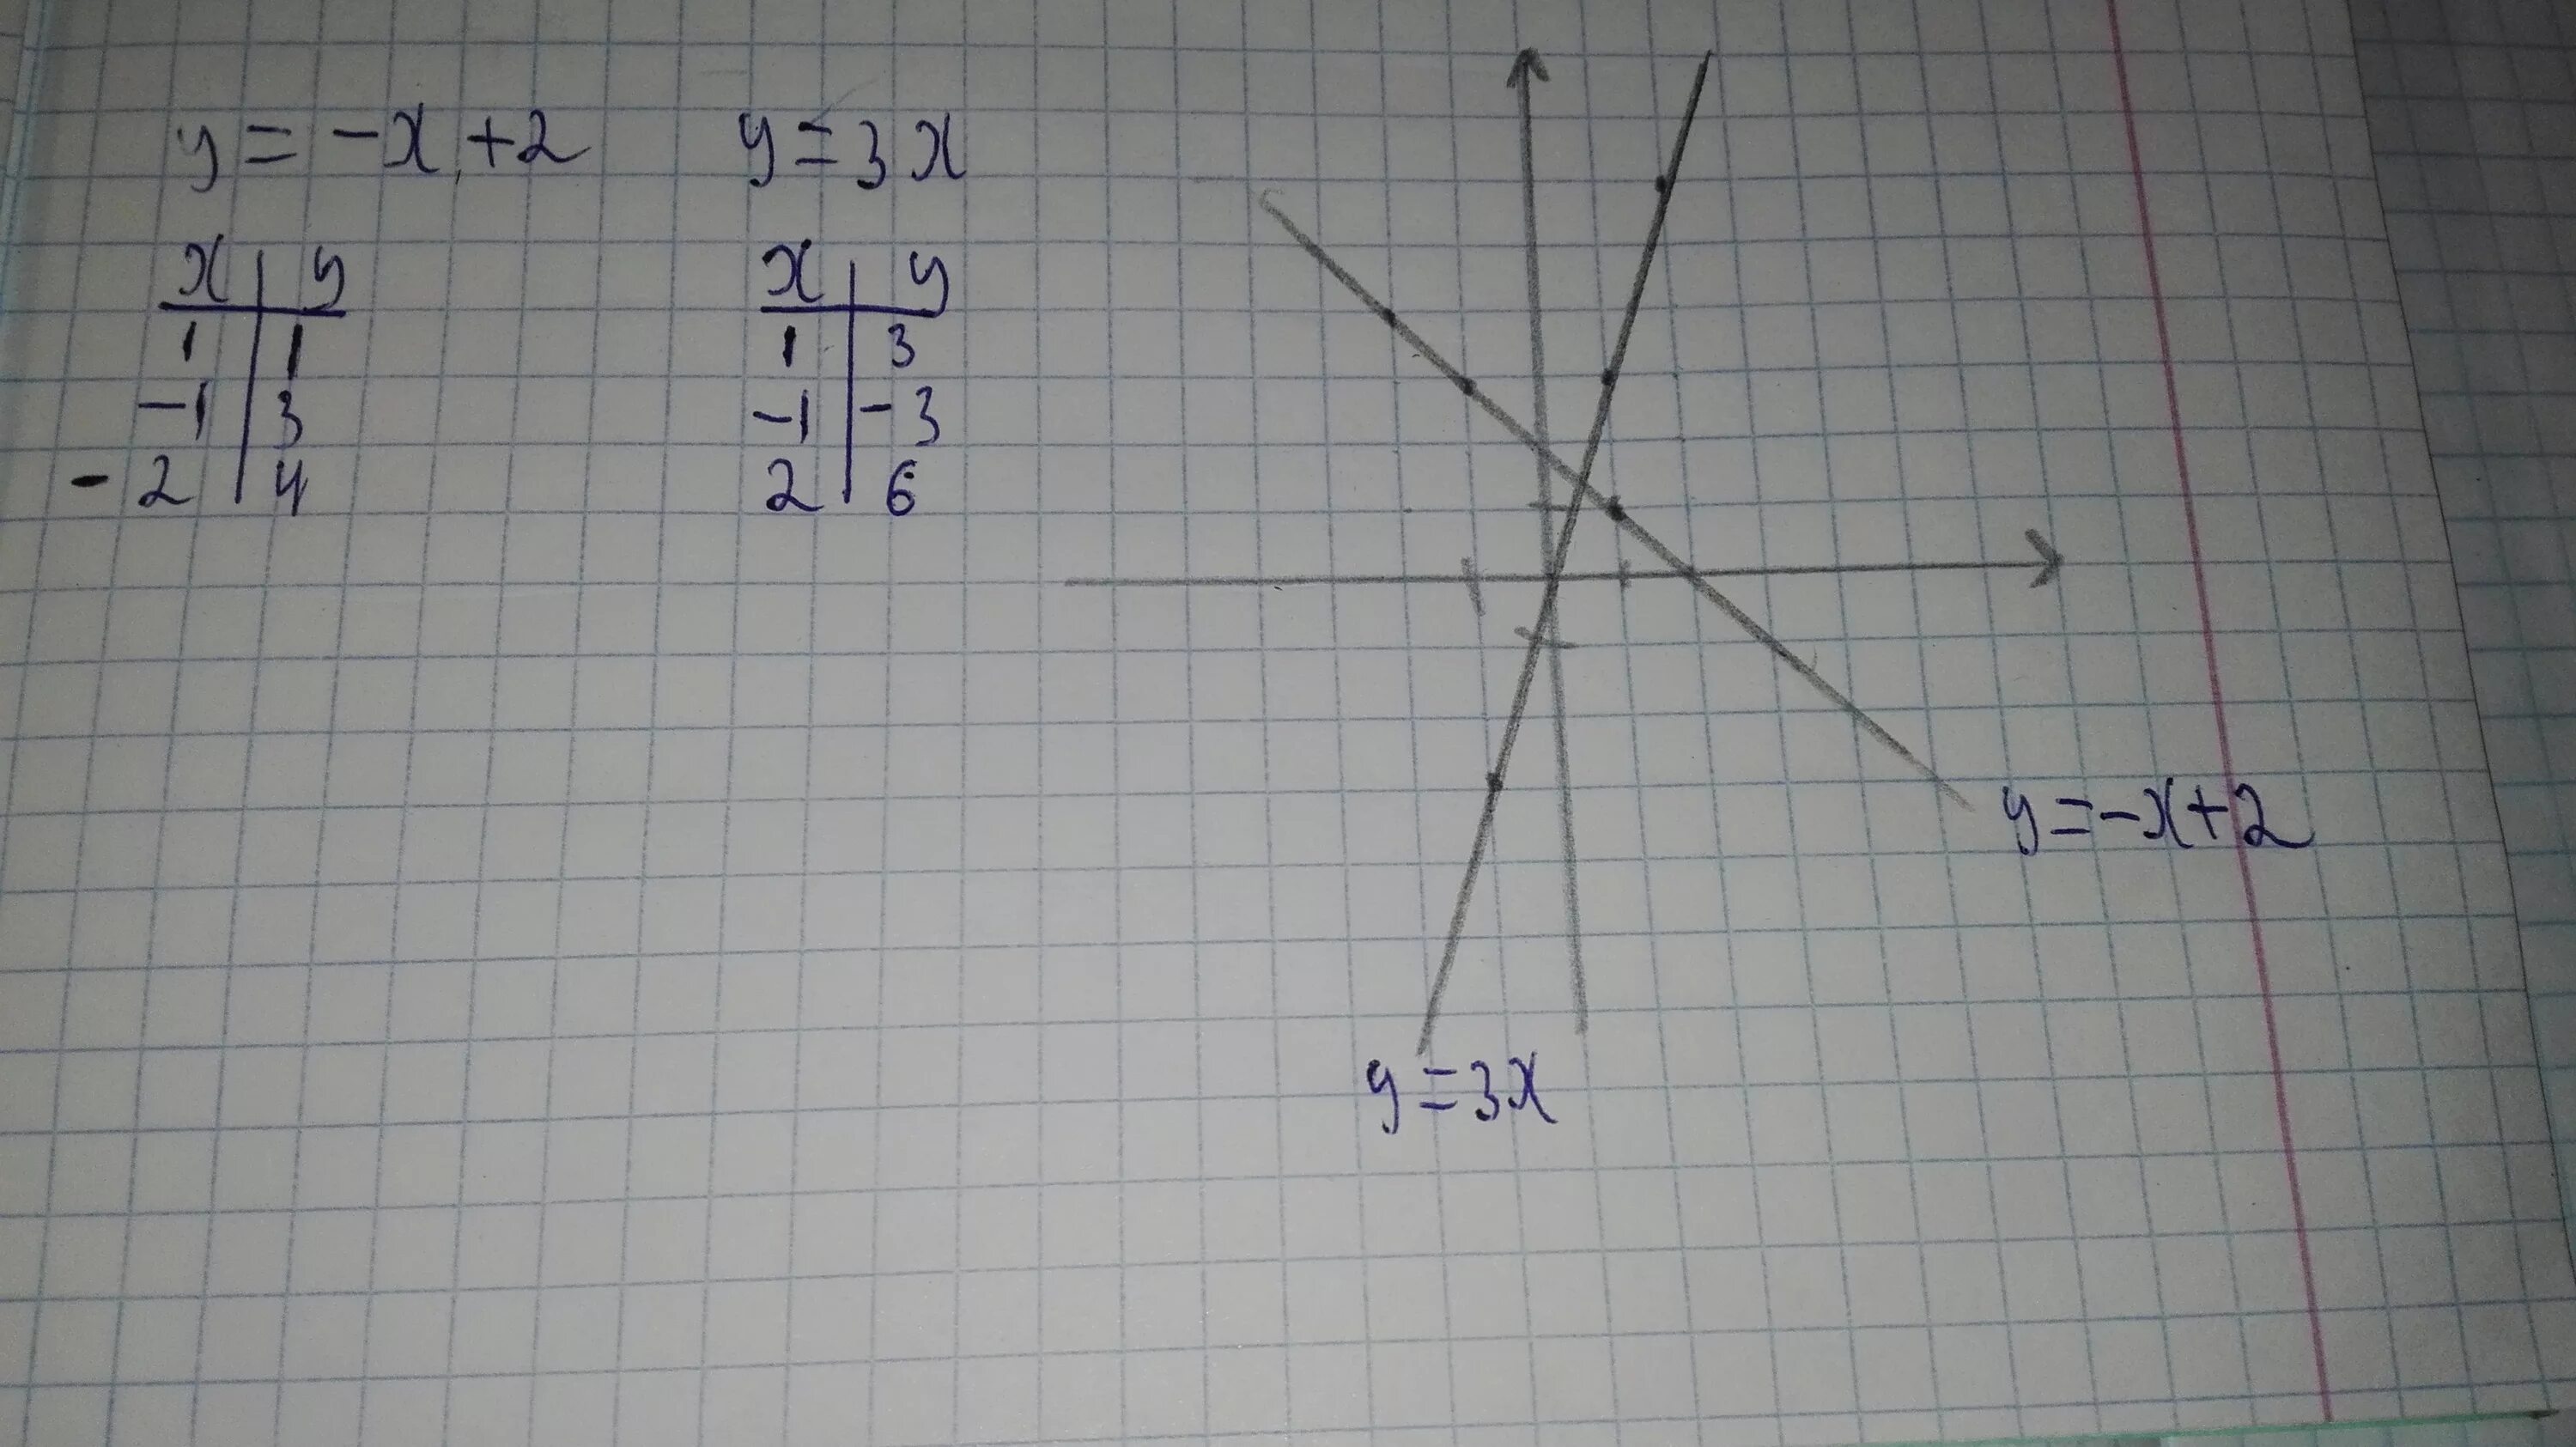 У 3 2 х 19. Постройте в одной системе координат графики функций. В одной и той же системе координат постройте графики функций. Построить в одной системе координат графики функций у 2х. Построить в одной системе координат графики функций y=0,5x2.